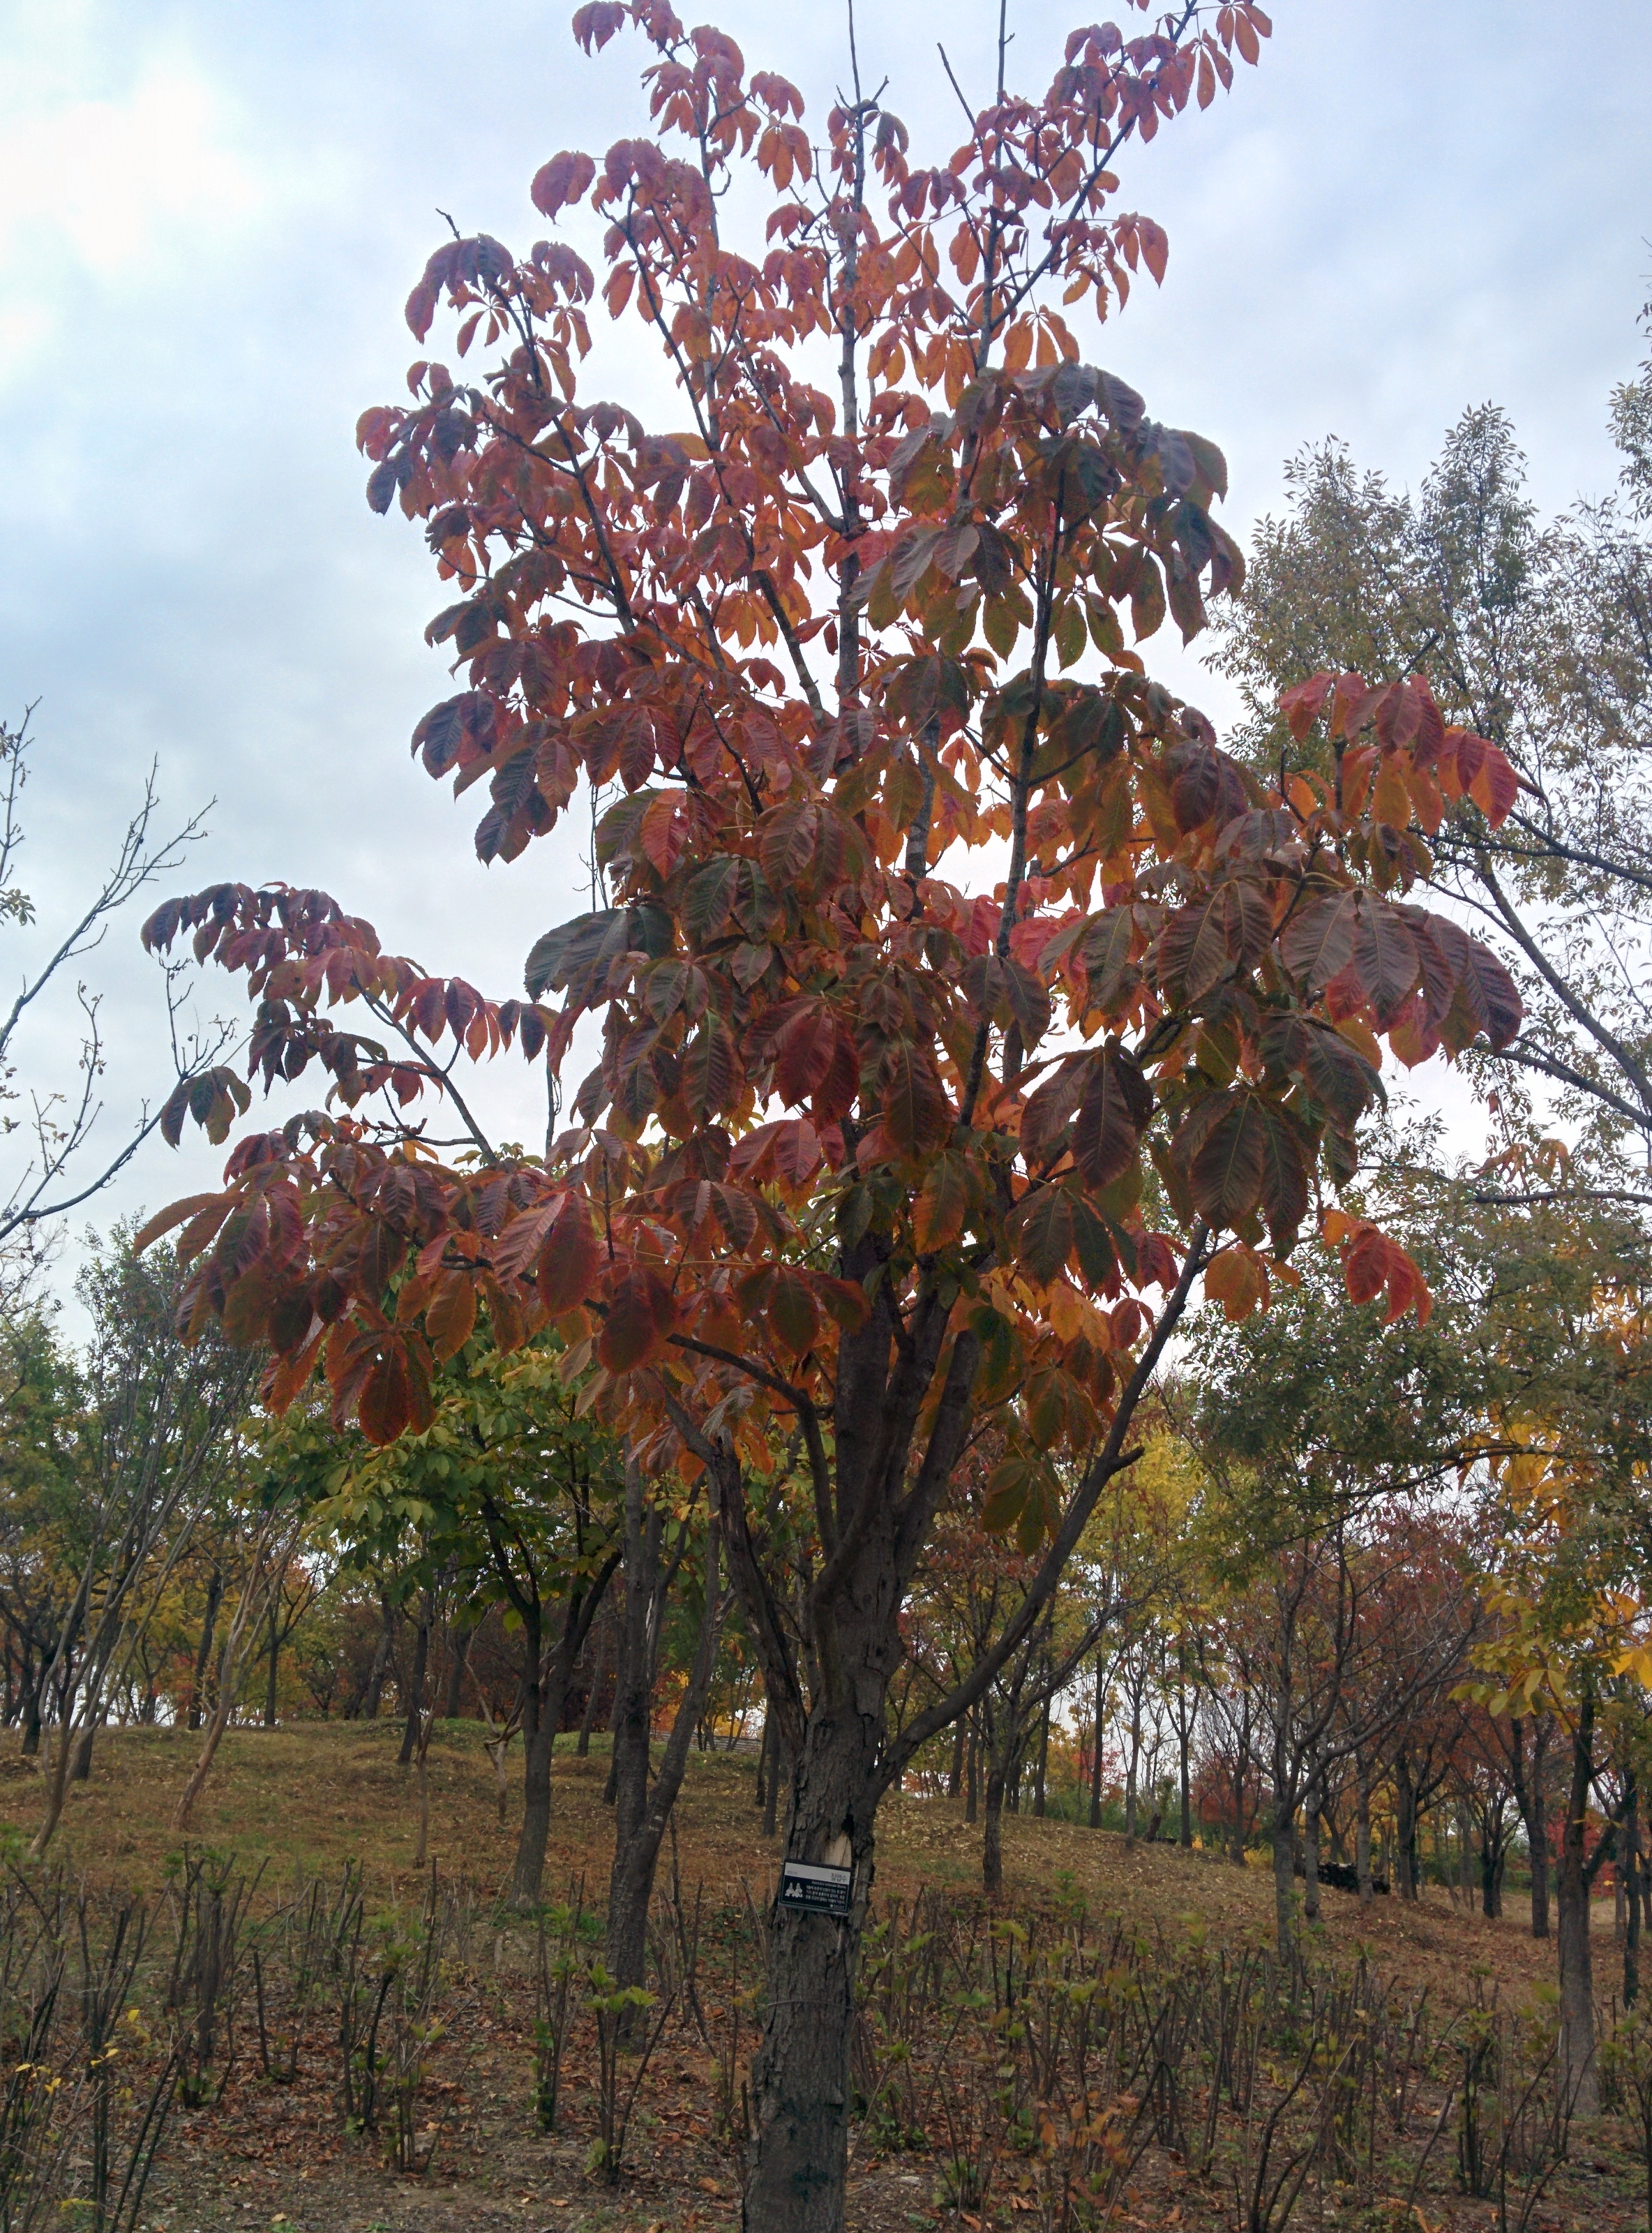 IMG_20151106_144105.jpg 일곱개 잎이 모여나는 칠엽수(七葉樹)